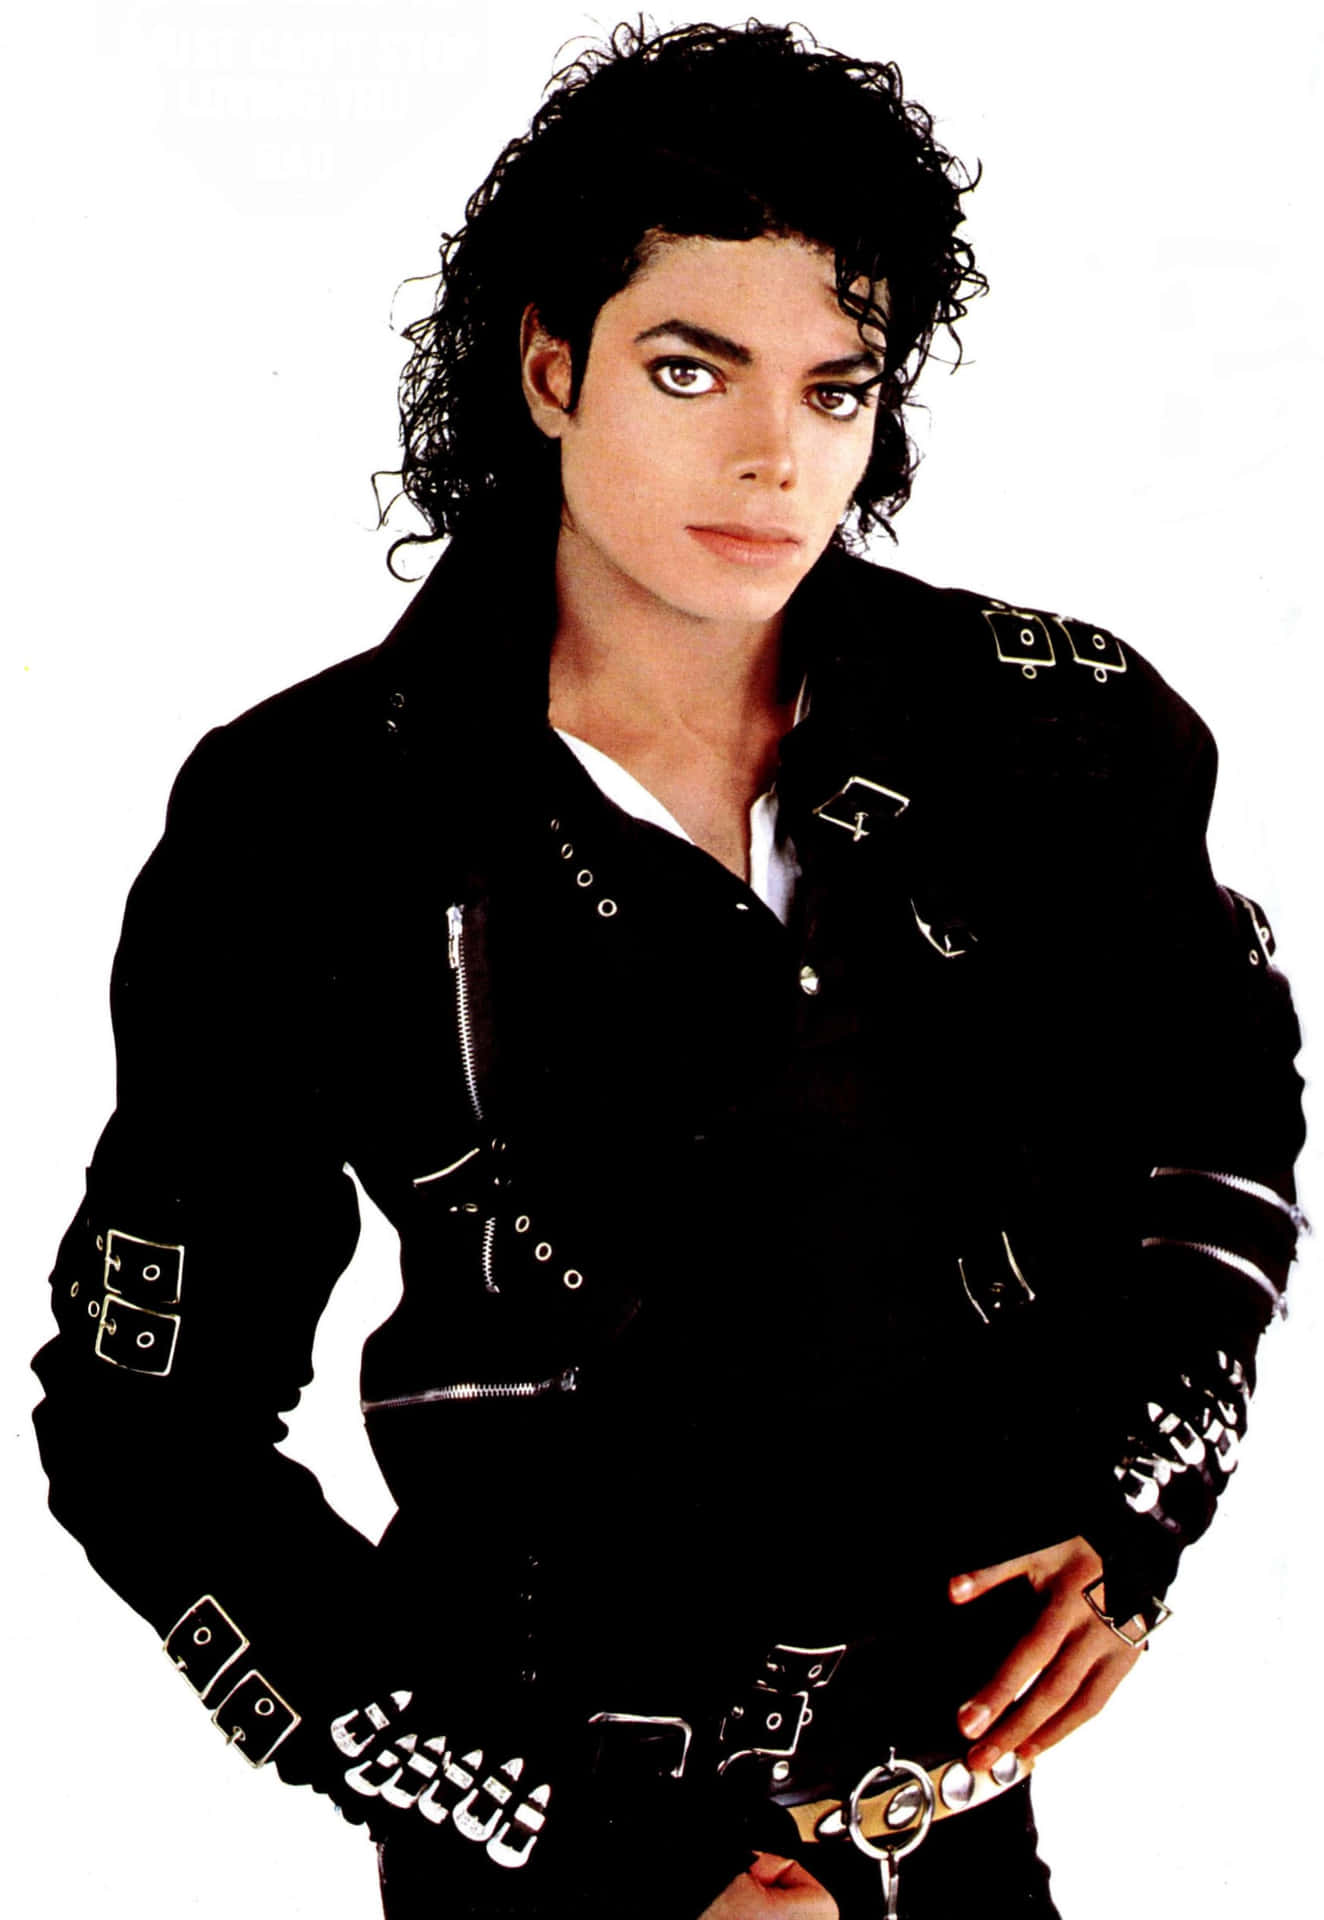 Billeder af Michael Jackson hopper rundt på tapetet.